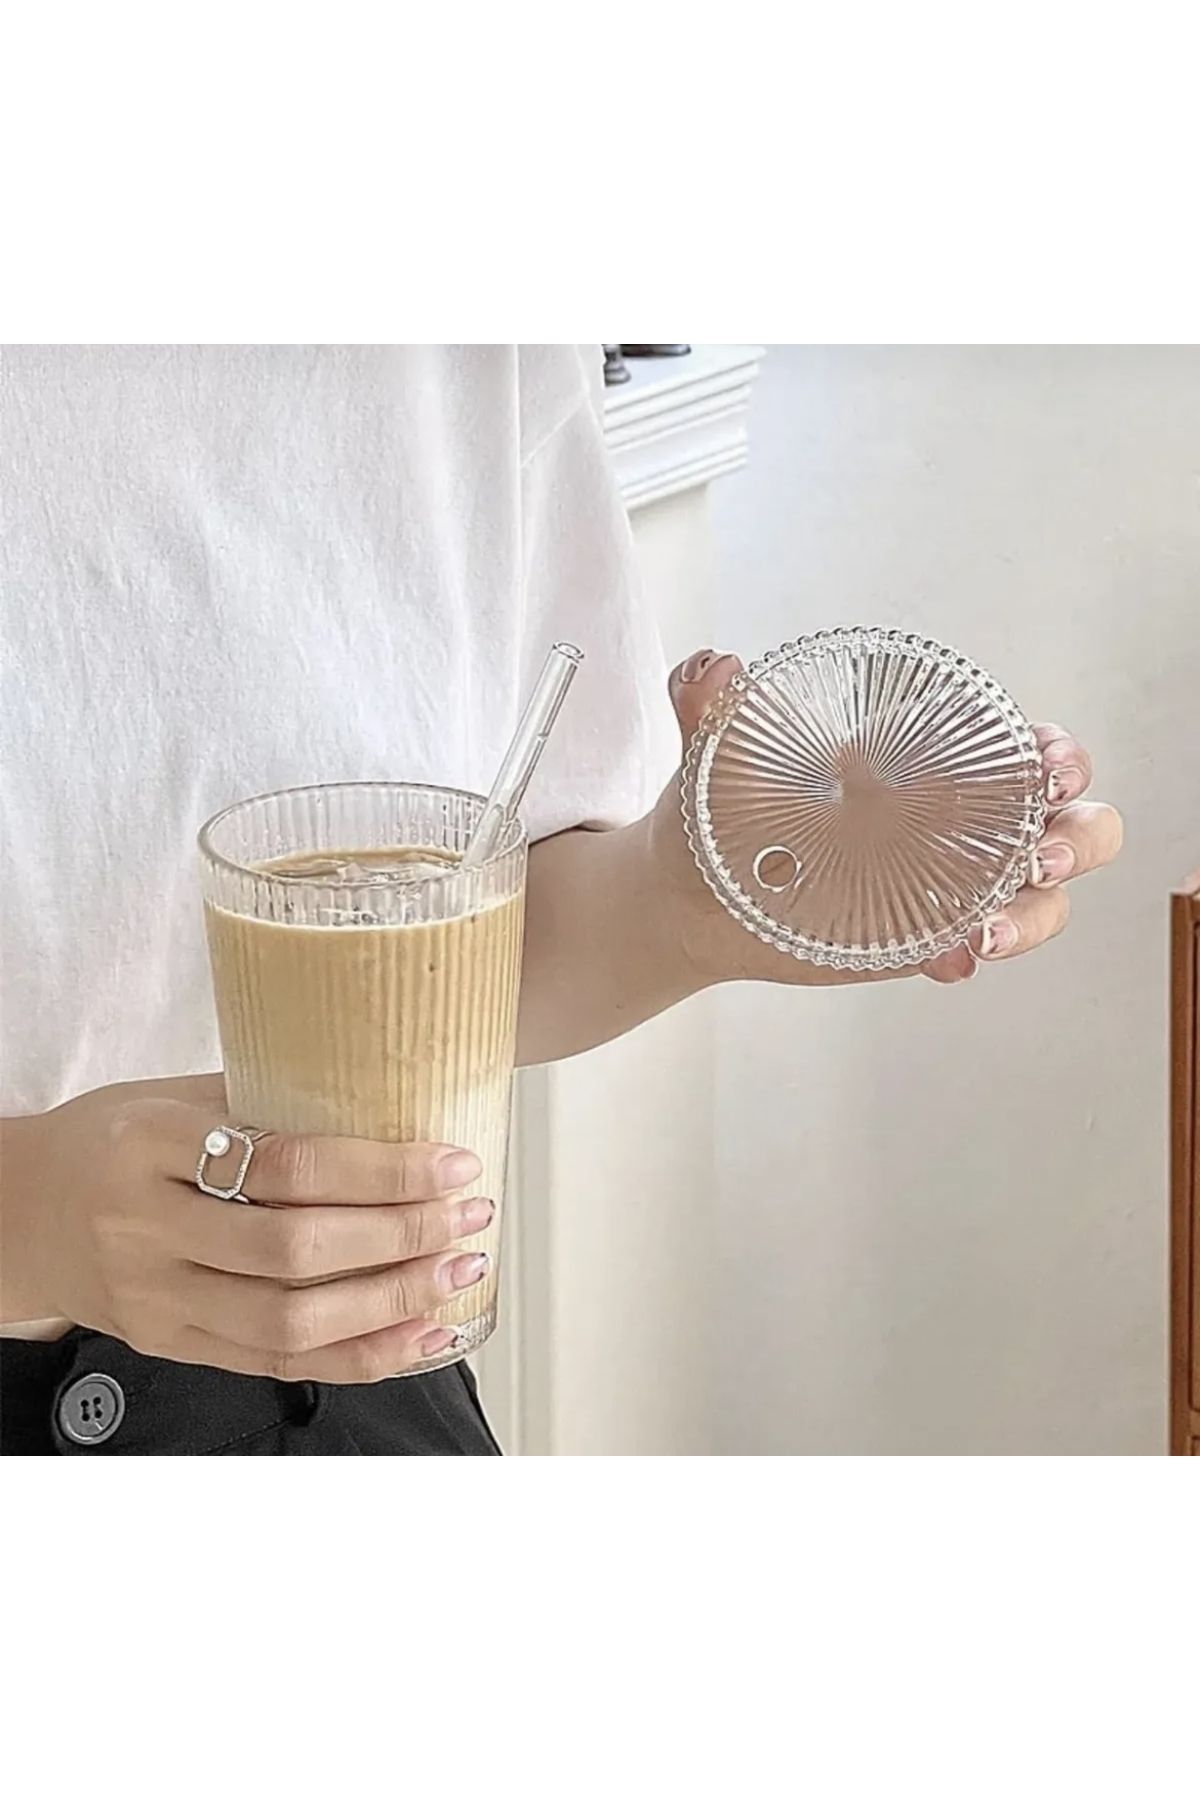 Atelier by Ece Şeritli Origami Mika Kapaklı Pipetli Soğuk Kahve Meşrubat Bardağı